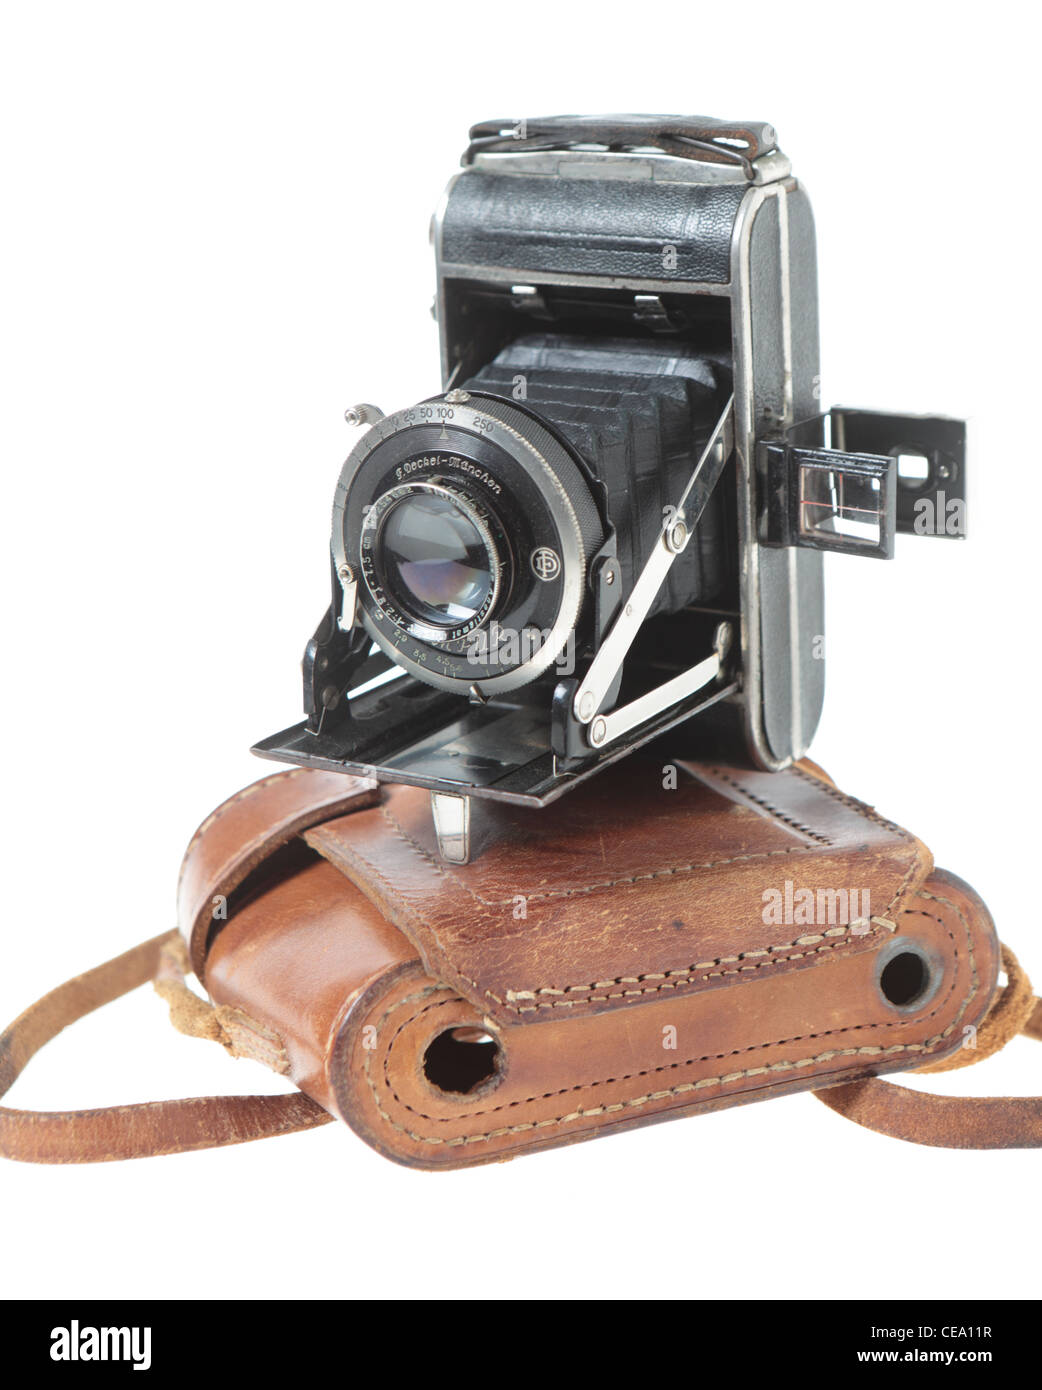 Un 1930 tedesco-realizzato Welta Perle fotocamera con un otturatore Compur e Steinheil di Monaco di Baviera f2.9 Anastigmat (Cassar?) la lente Foto Stock